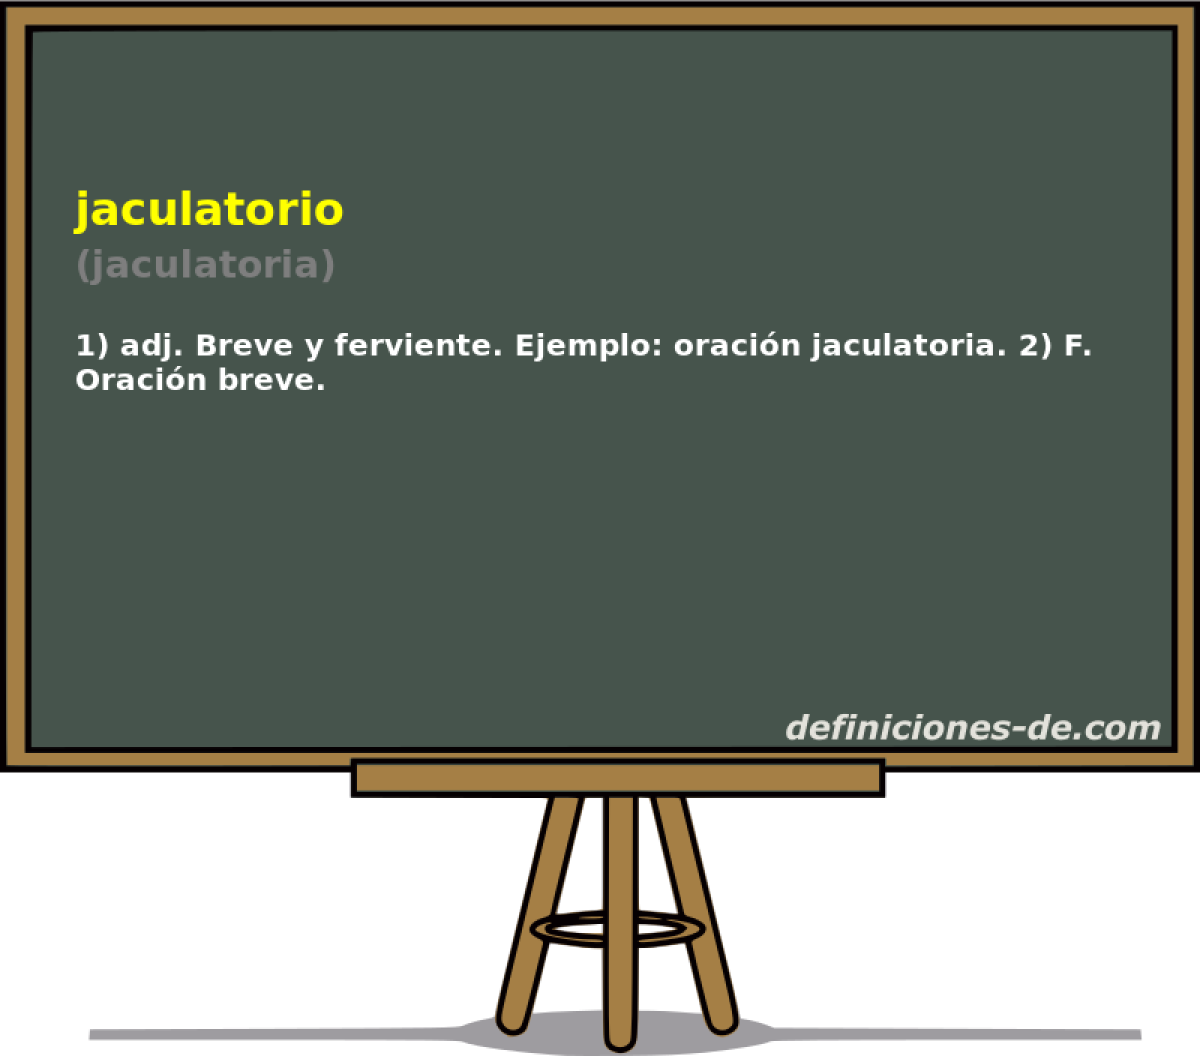 jaculatorio (jaculatoria)